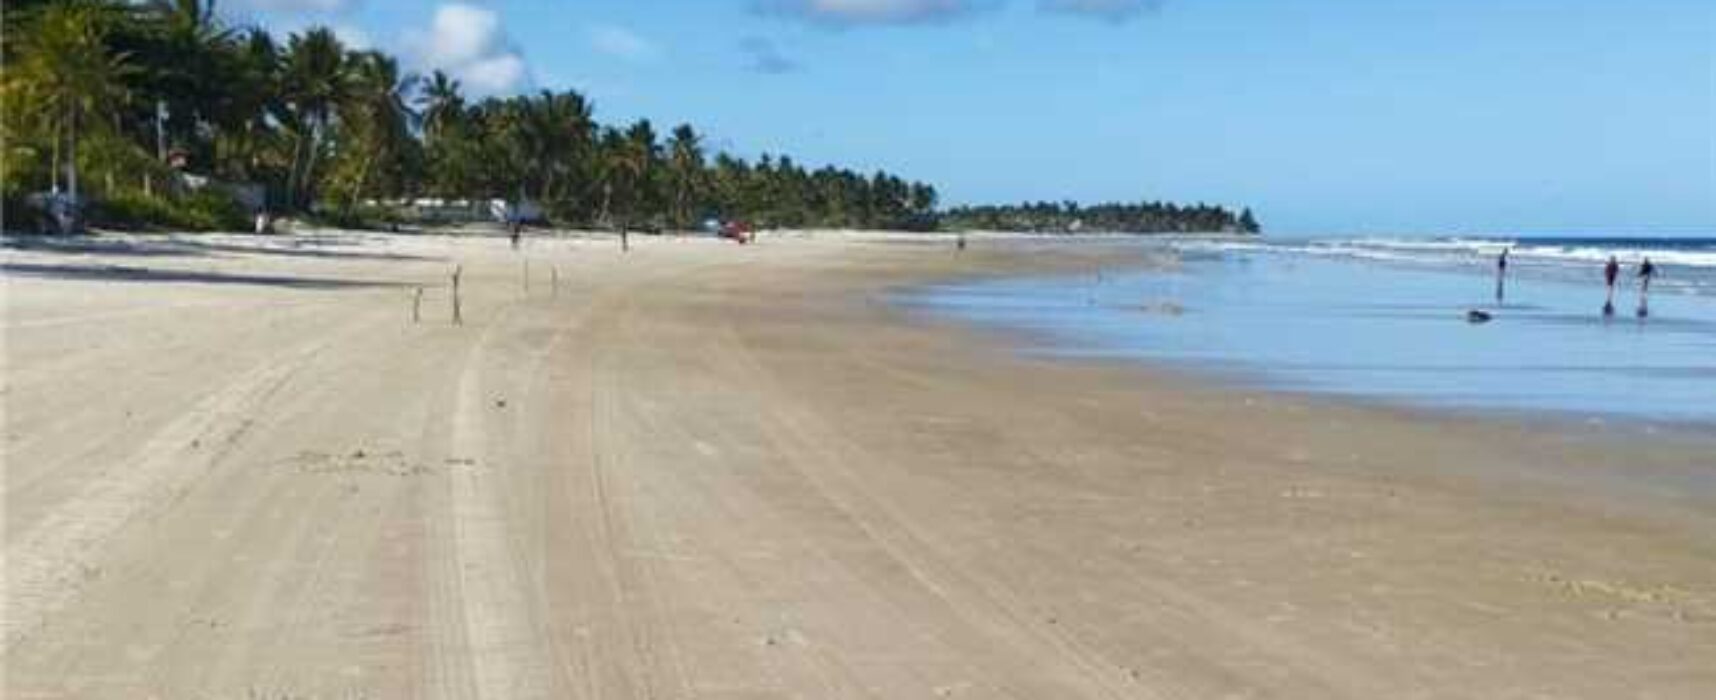 Prefeitura de Ilhéus realiza mutirão e intensifica limpeza de praias para retirada de baronesas